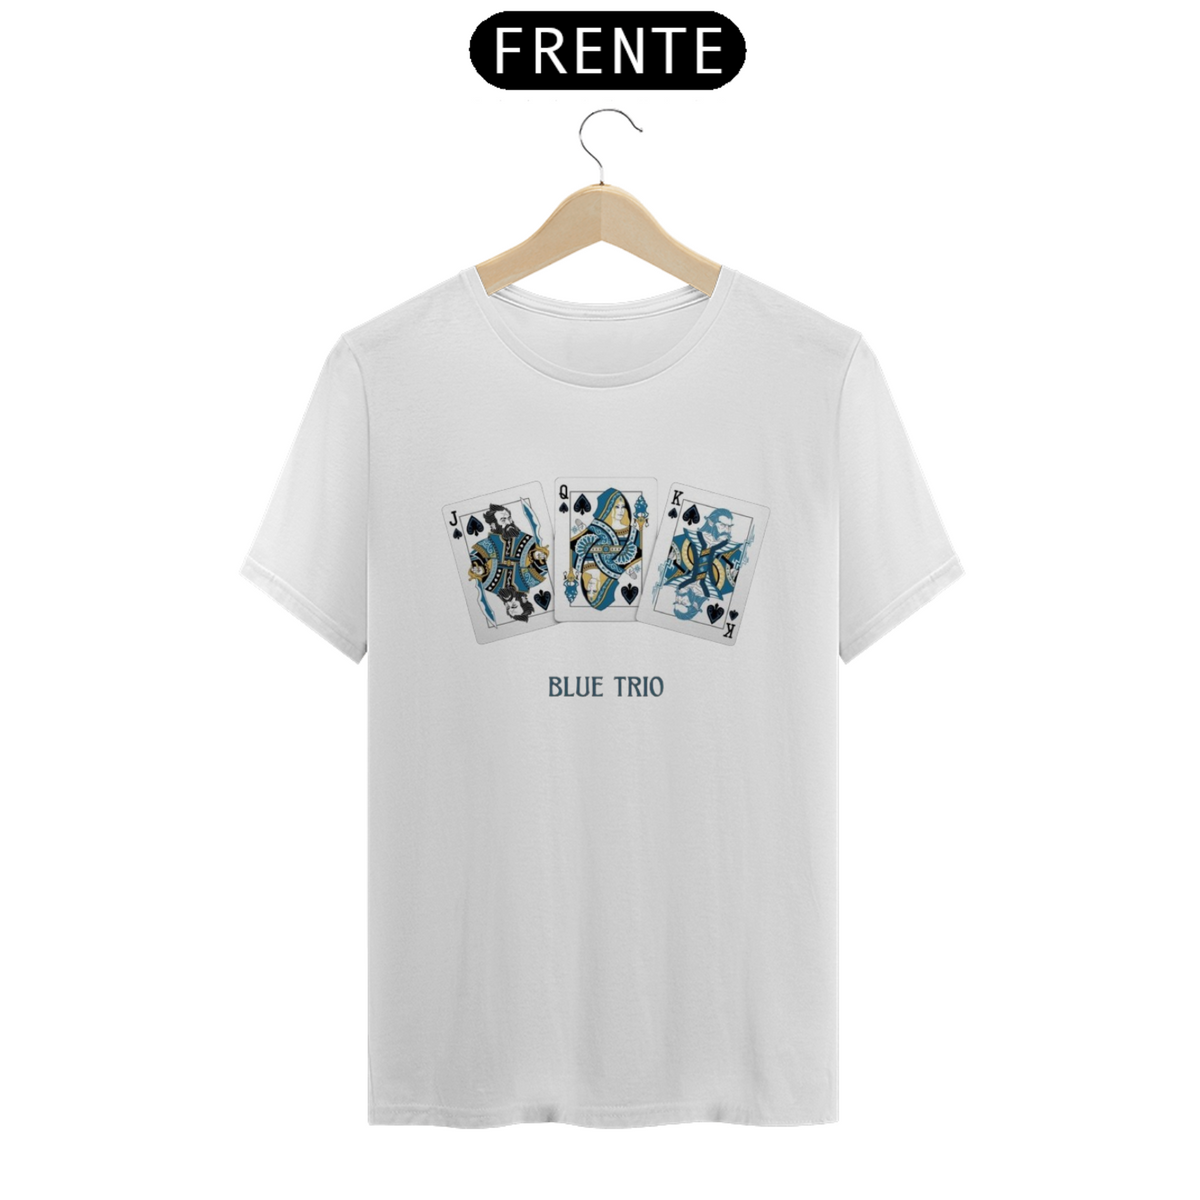 Nome do produto: Camiseta Blue Trio